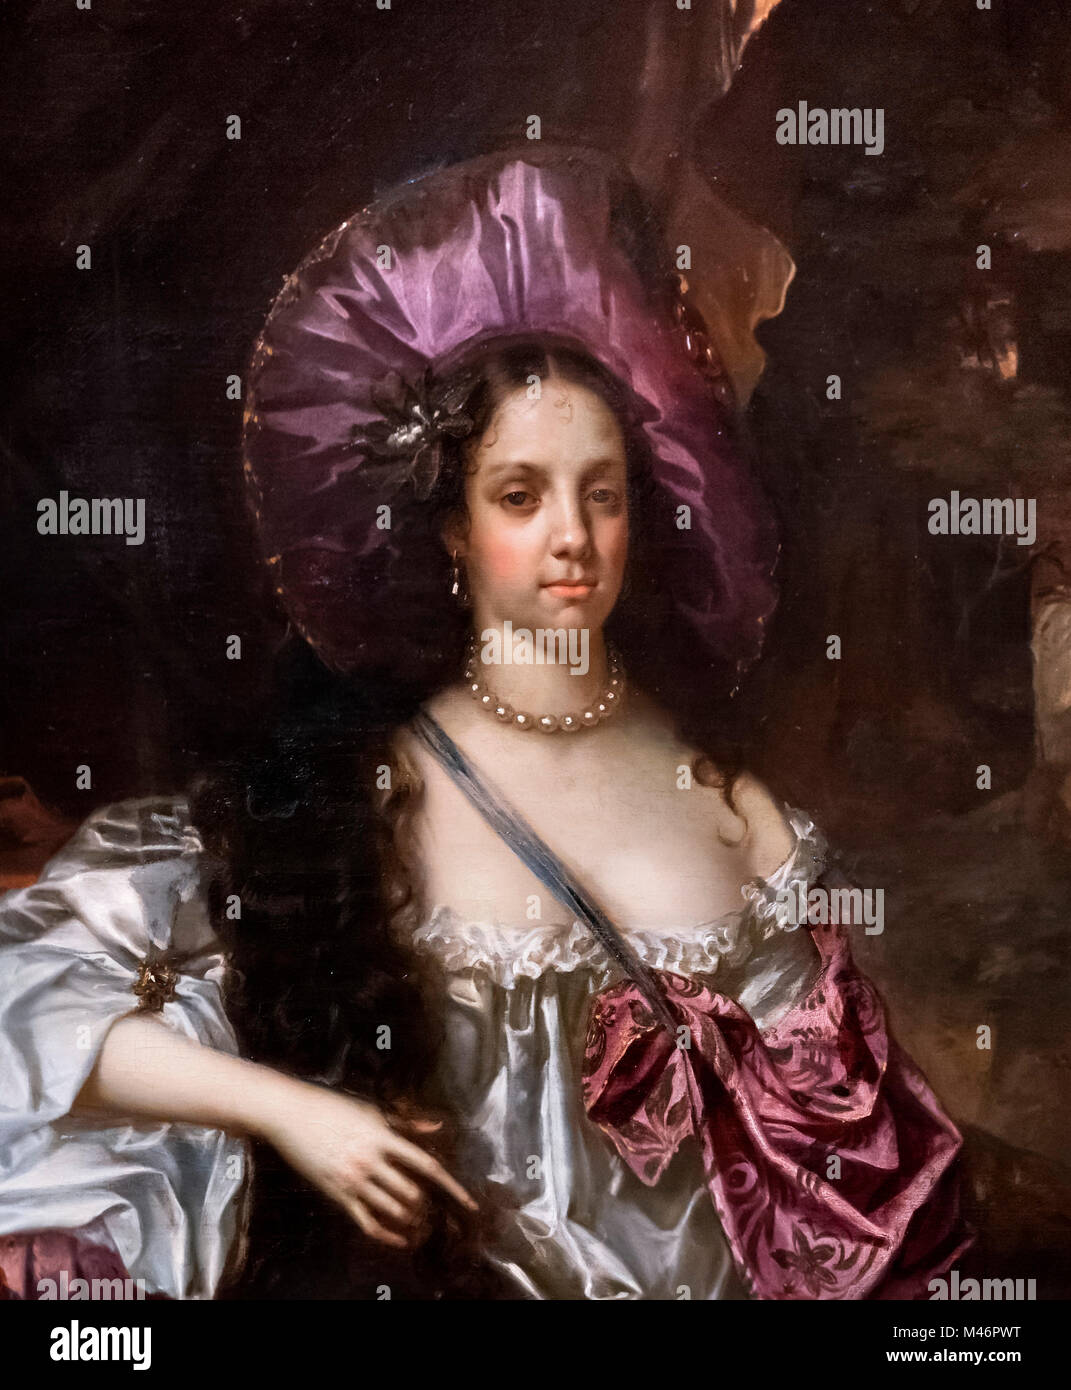 Catalina de Braganza (1638-1705), reina consorte como esposa del rey Carlos II. Retrato de Hacob Huysmans, óleo sobre lienzo, 1662-4. Detalle de una pintura de mayor tamaño, M46PWW. Foto de stock